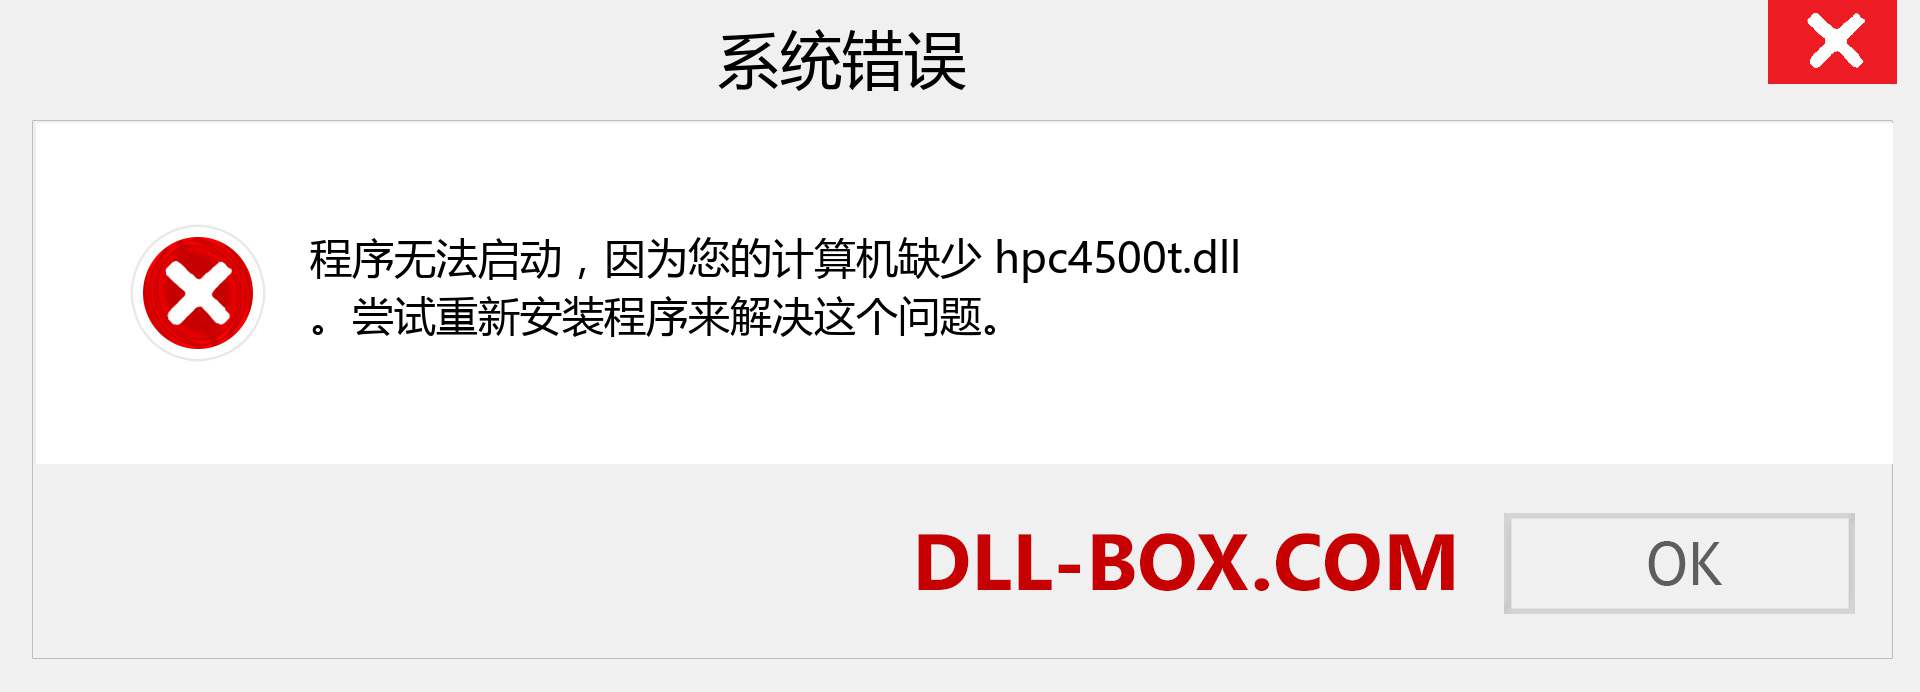 hpc4500t.dll 文件丢失？。 适用于 Windows 7、8、10 的下载 - 修复 Windows、照片、图像上的 hpc4500t dll 丢失错误